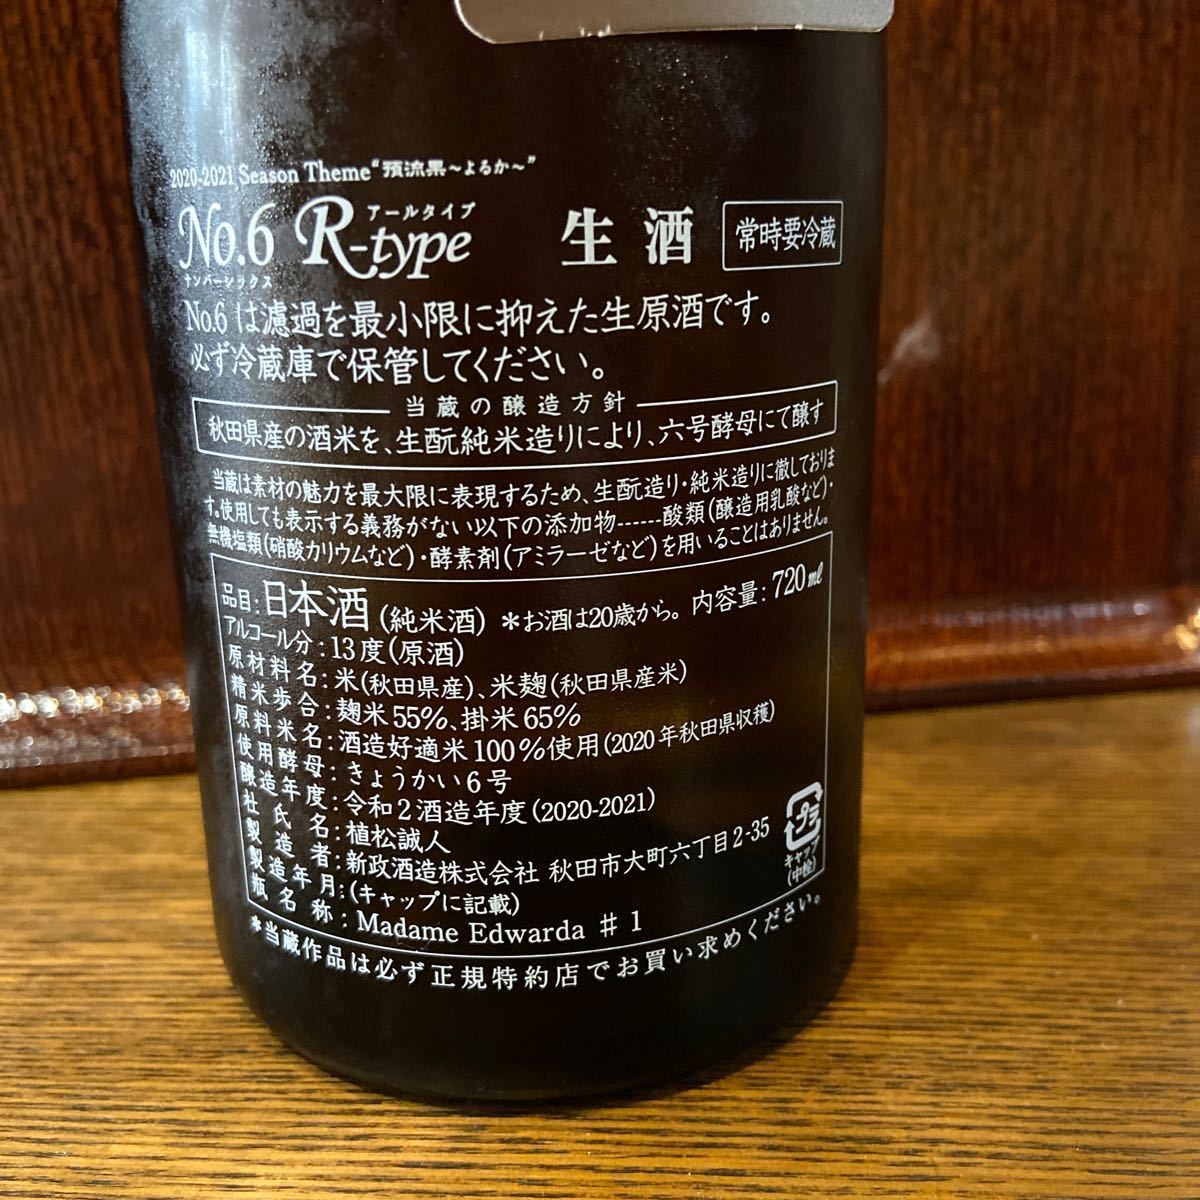 『No.6R-type』日本酒（純米酒）精米歩合:麹米55%掛米65% 内容量:72ml ｱﾙｺｰﾙ:13% 